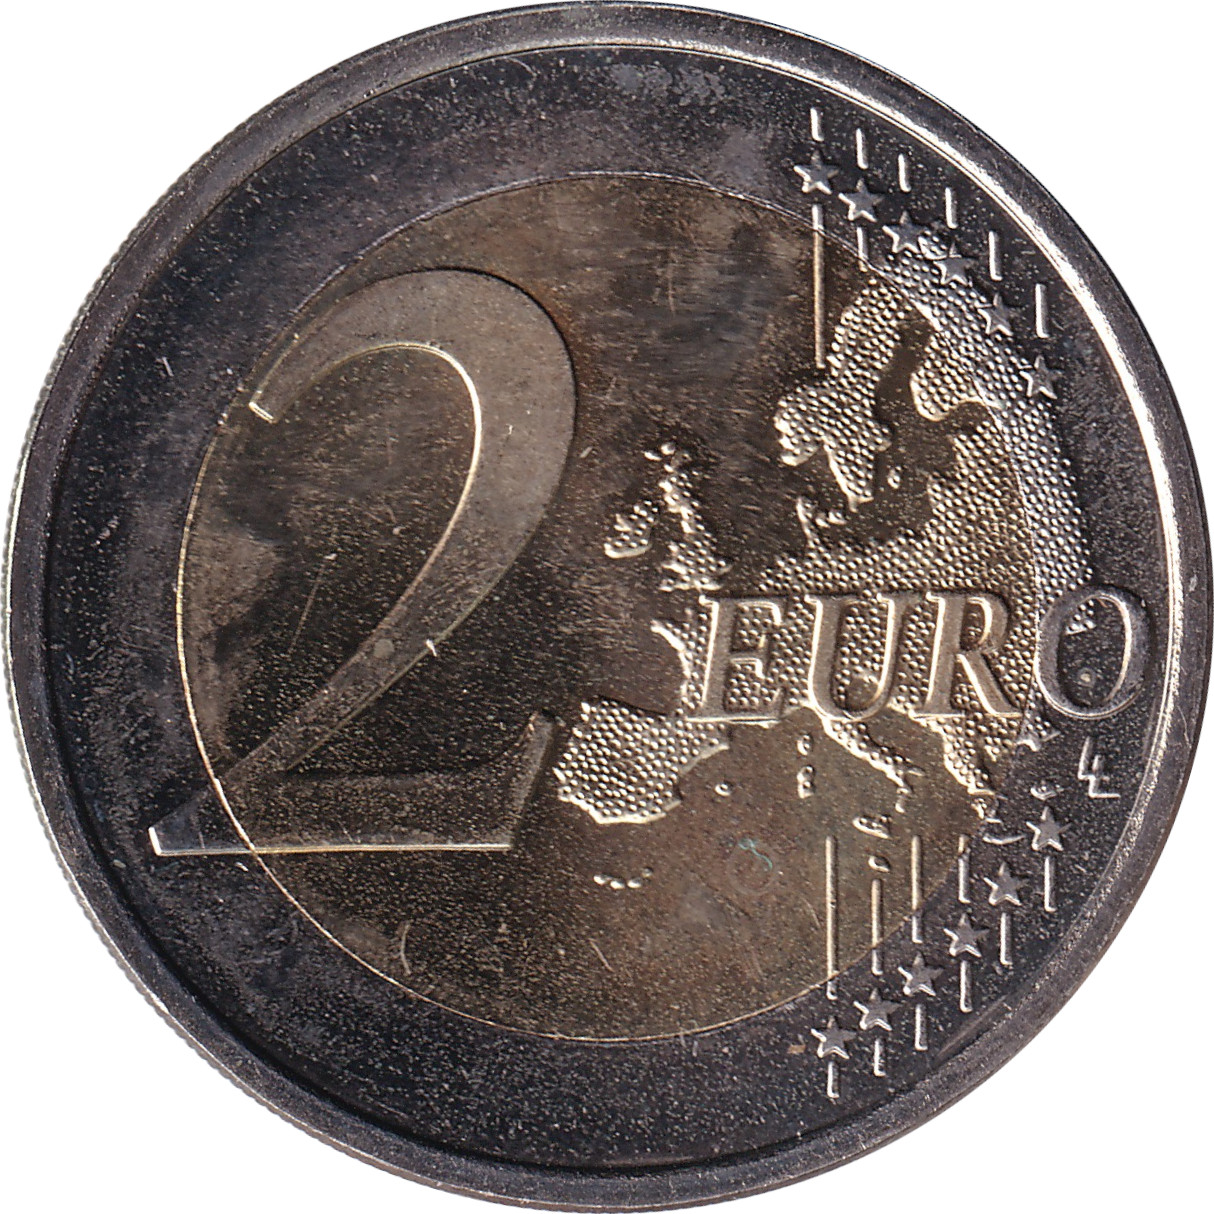 2 euro - Ilmari Tapiovaara